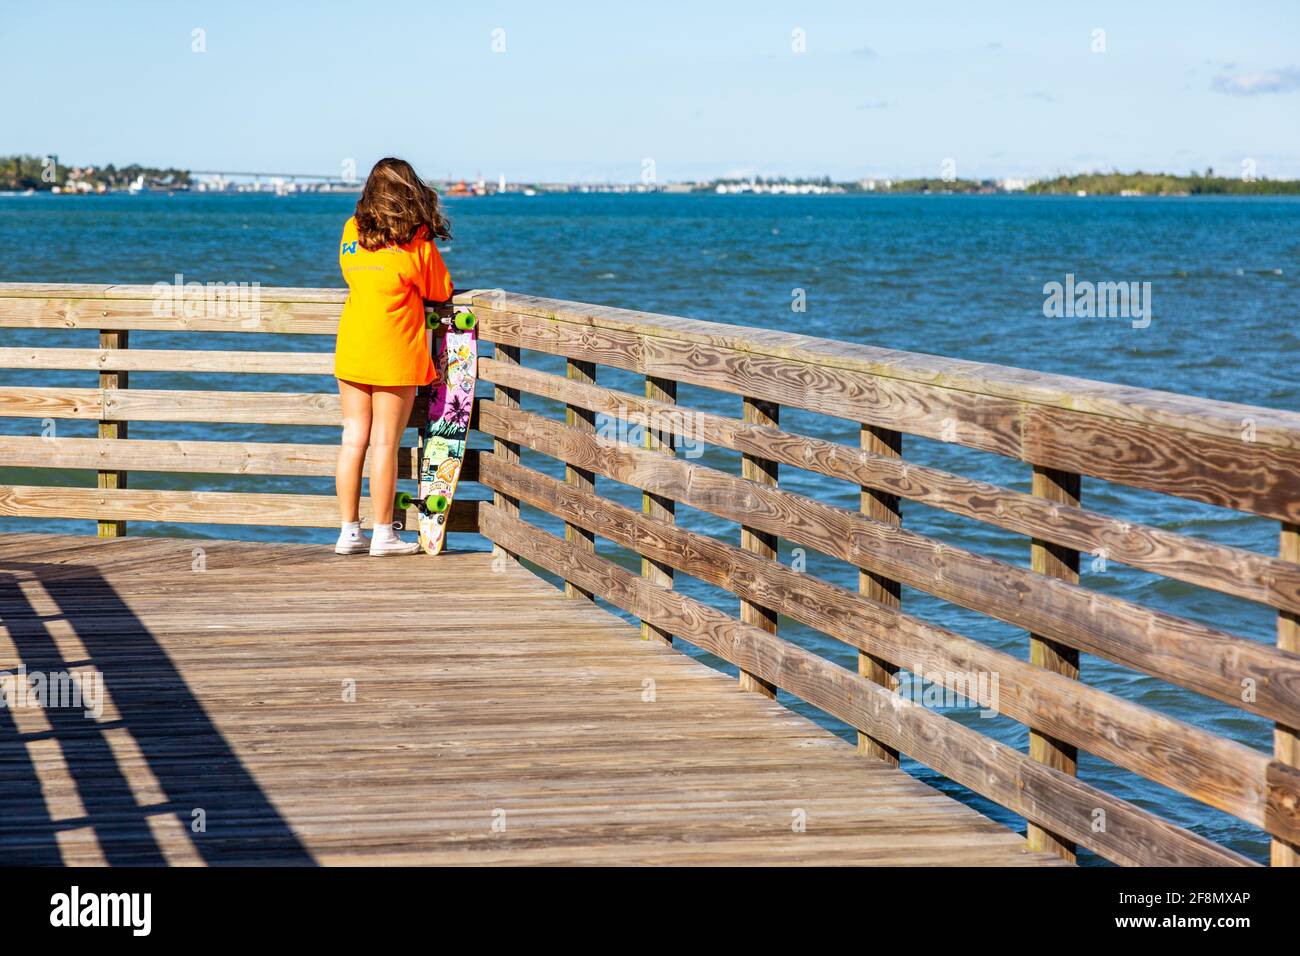 Ein junges Mädchen steht mit ihrem Longboard und blickt auf den Zusammenfluss des St. Lucie River und der Manatee Pocket im Twin Rivers Park, Port Salerno, Florida Stockfoto